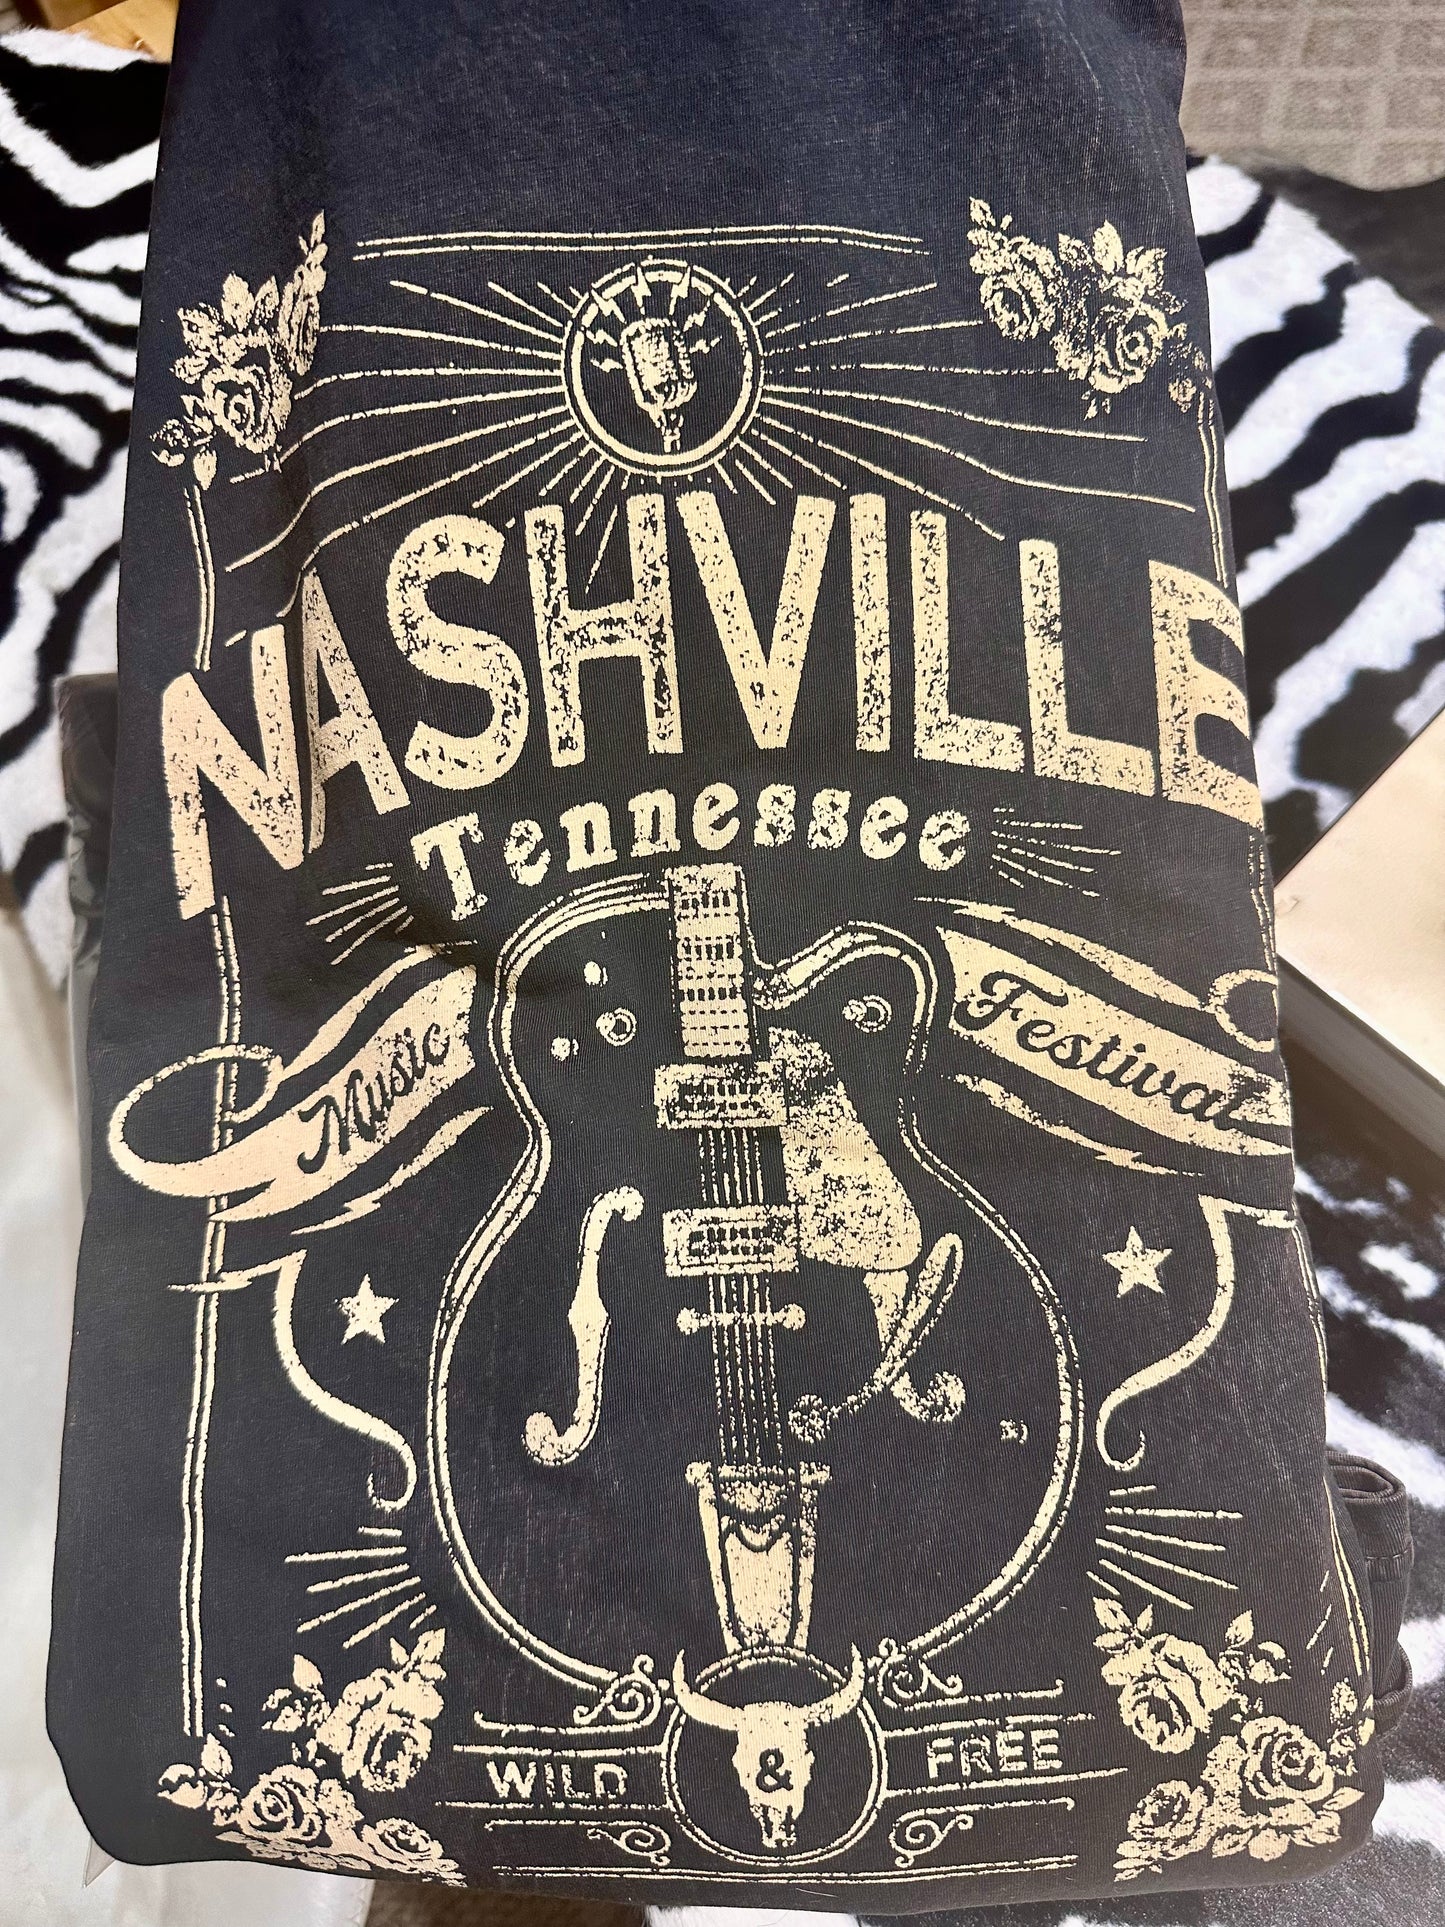 Nashville T-shirt dress ￼